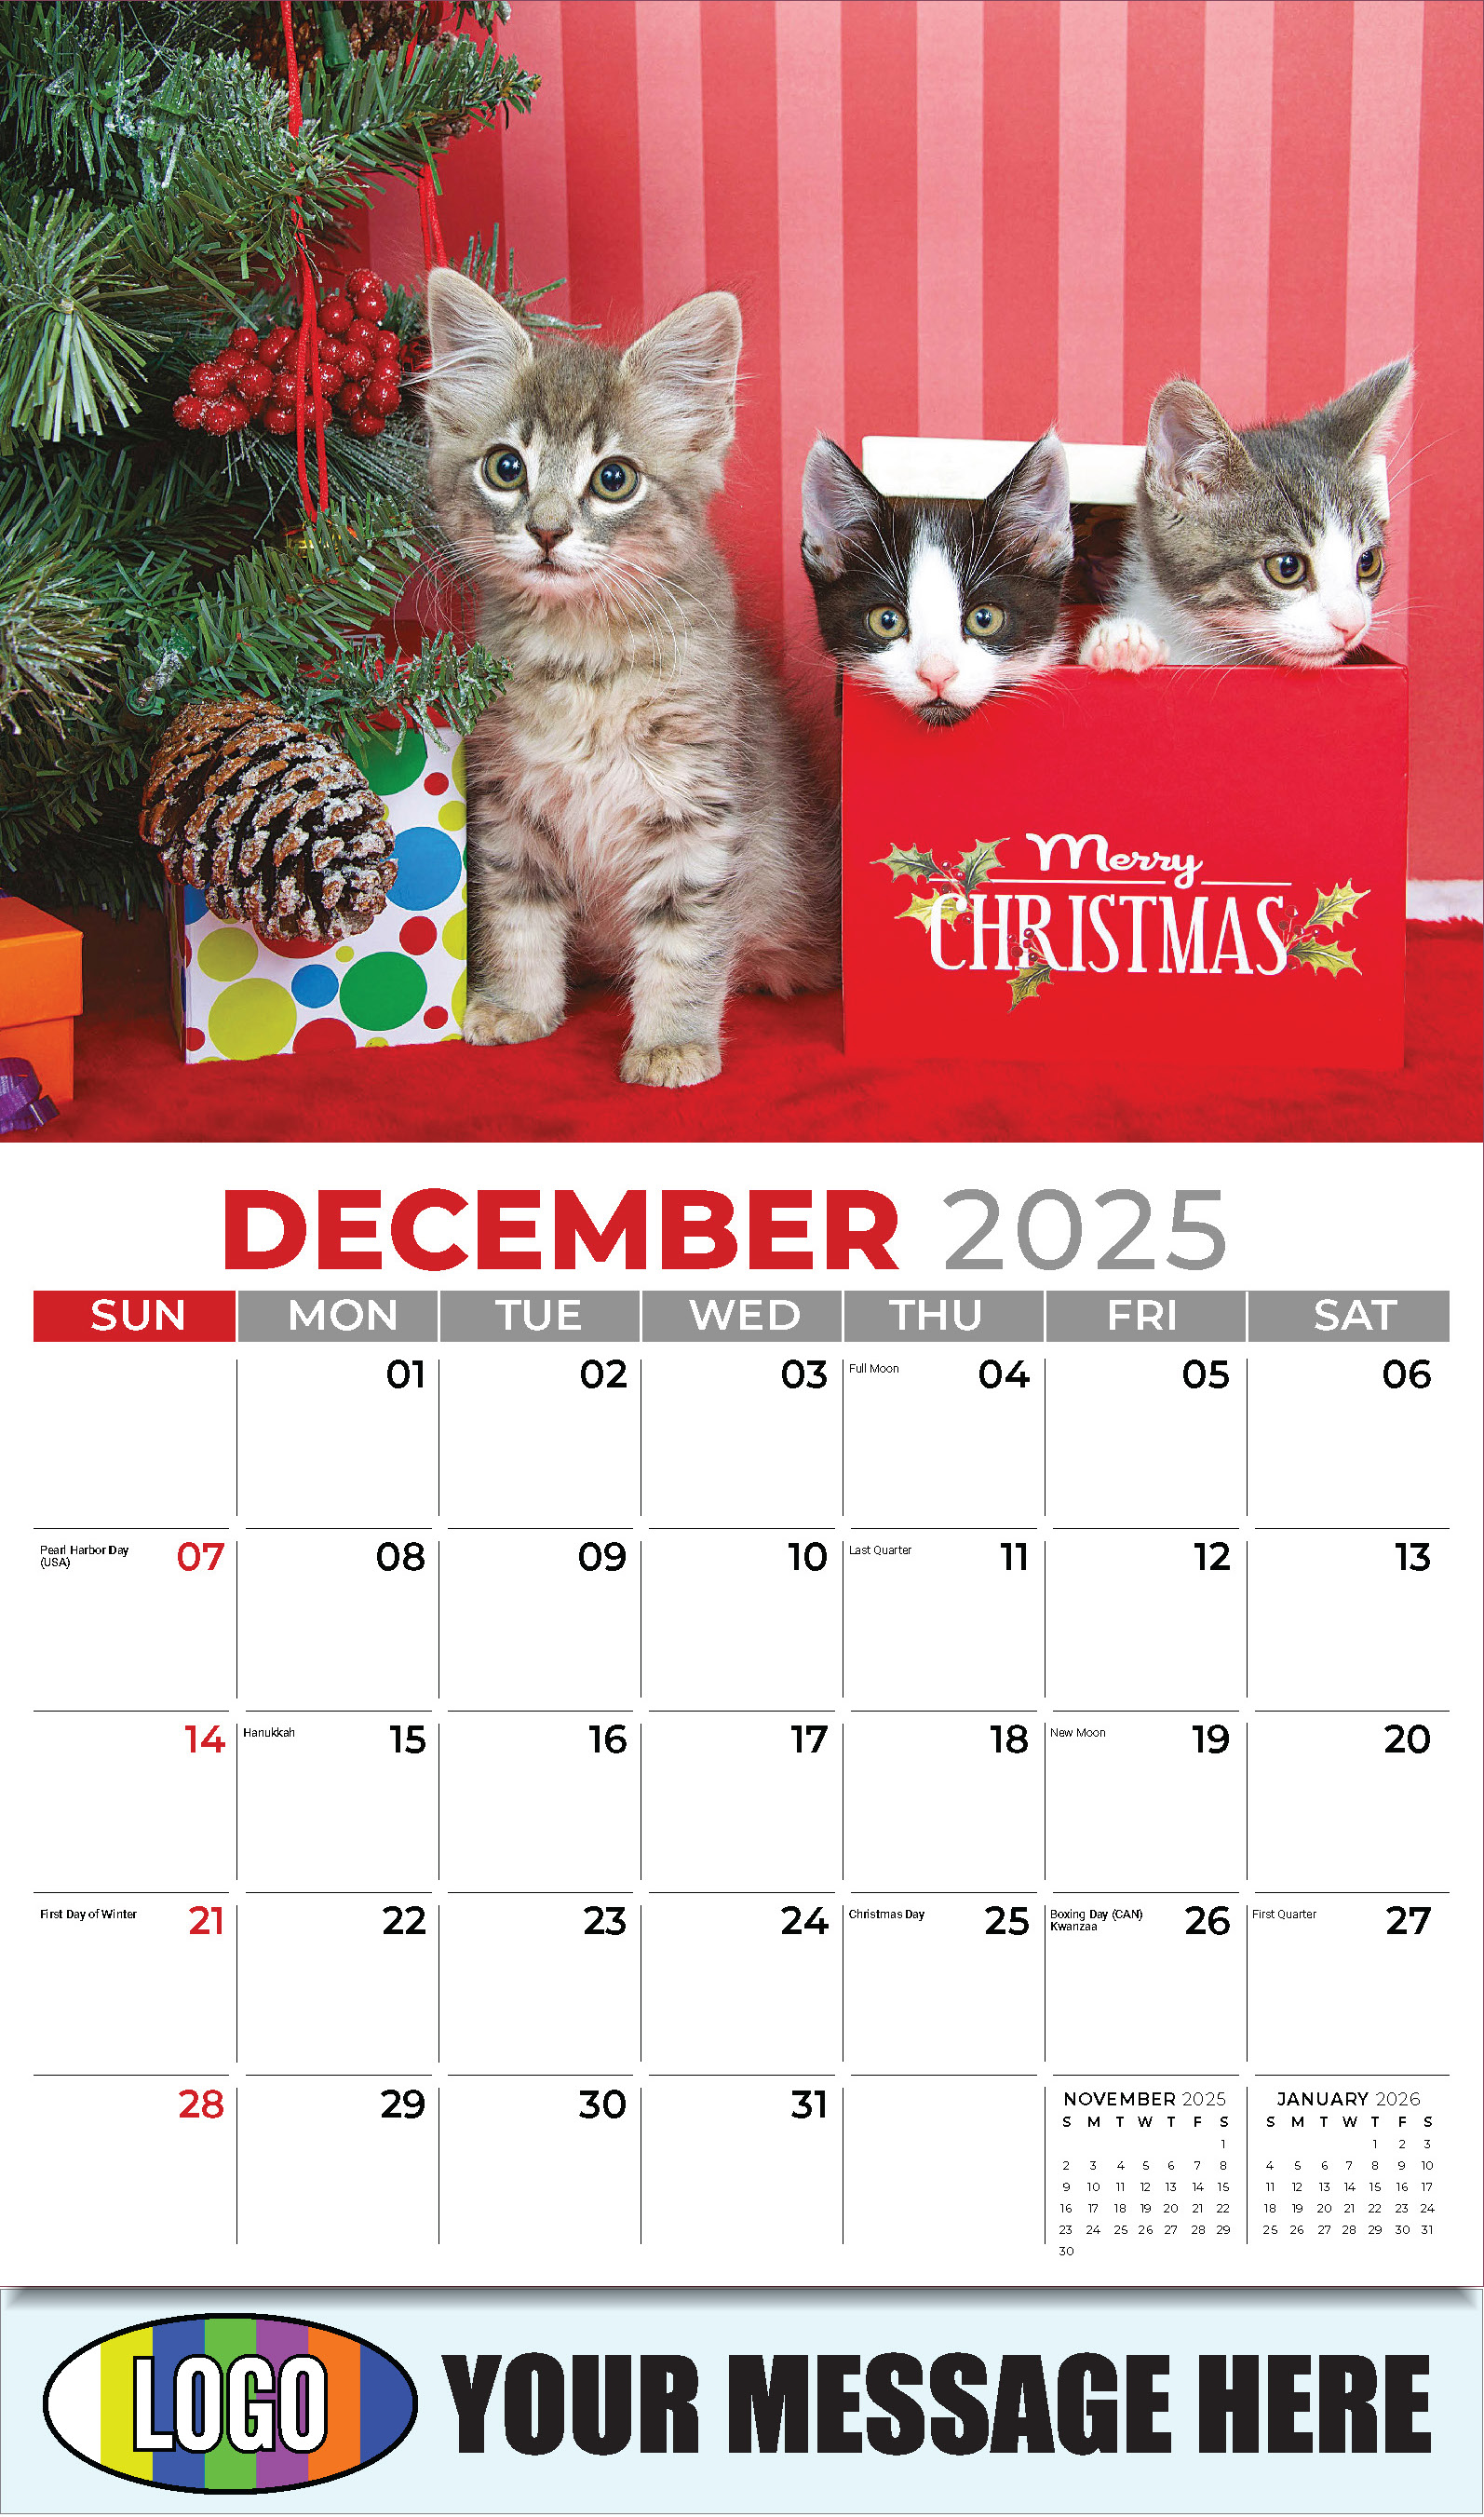 Kittens 2025 Business Promo Wall Calendar - December